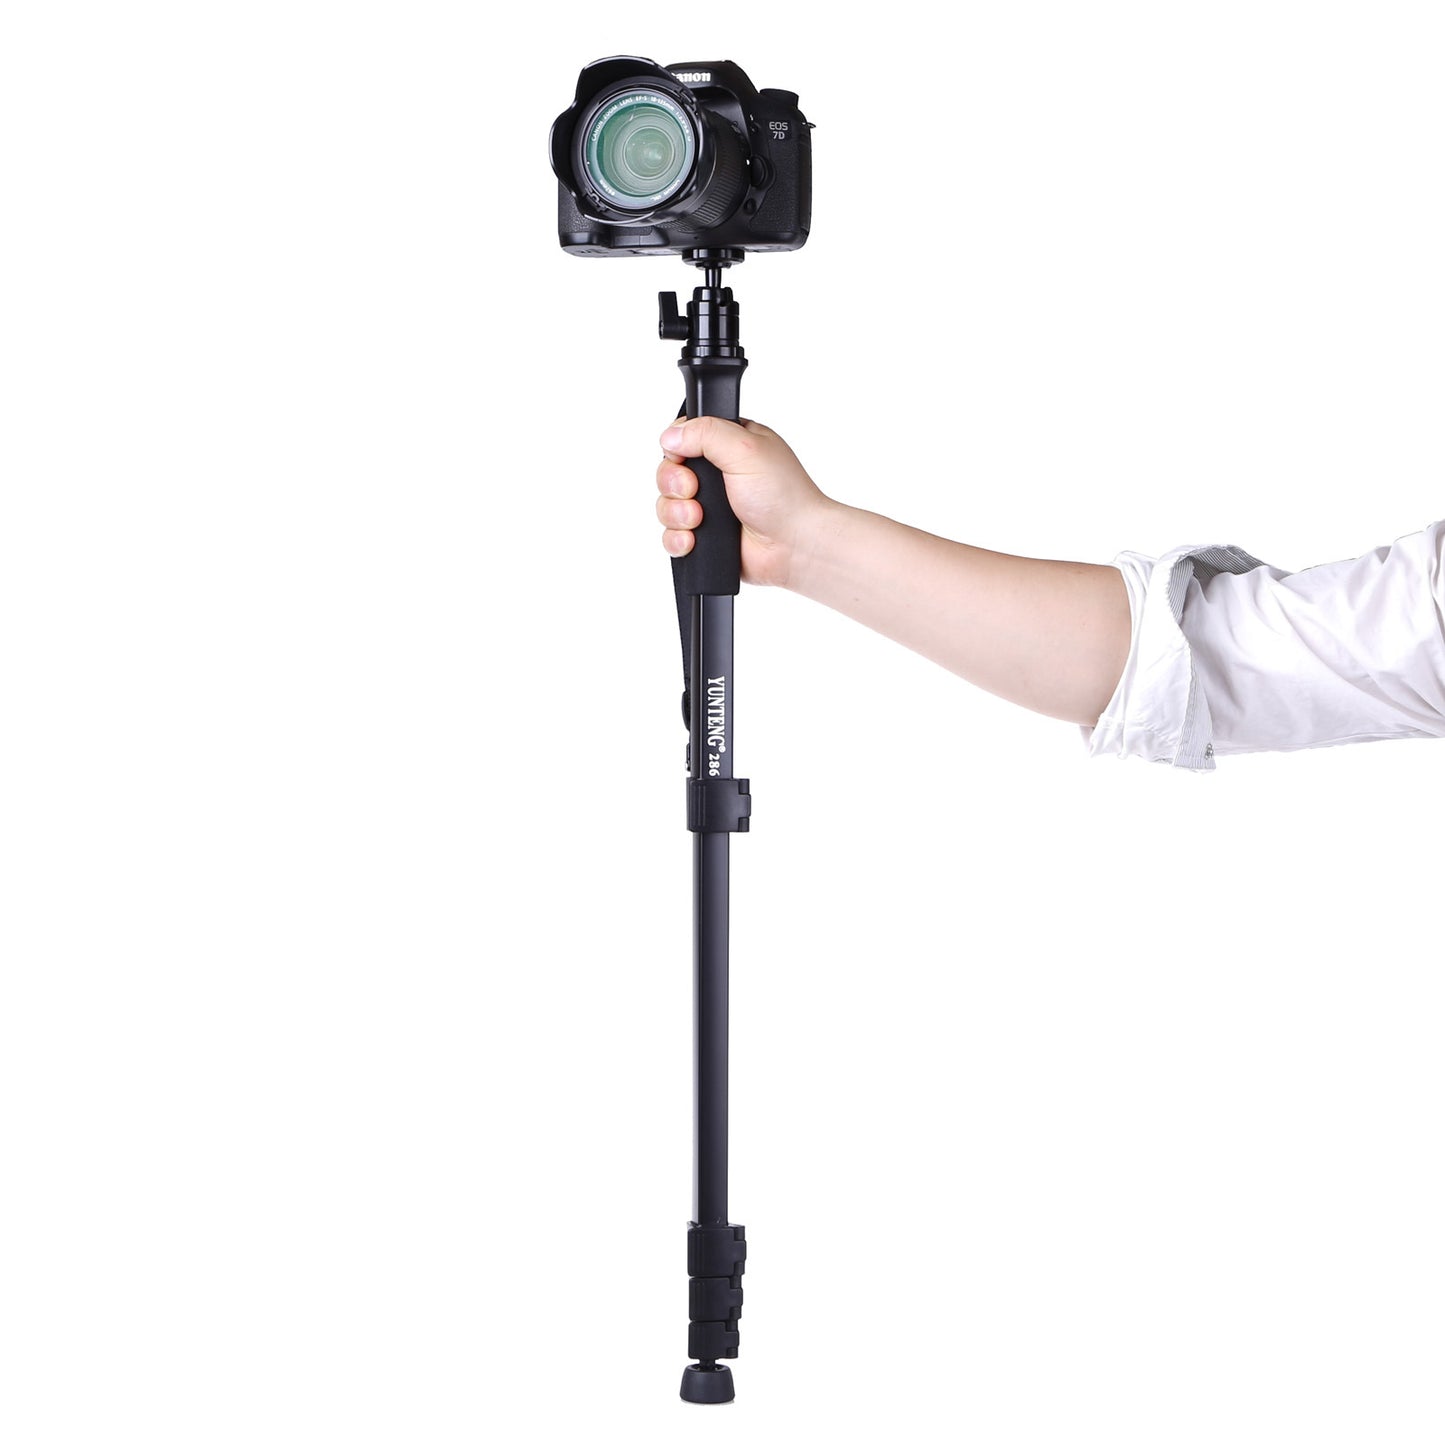 雲騰 286獨角架 輕便攜球型雲台 專業單反相機 數碼照相機 微單單腳架